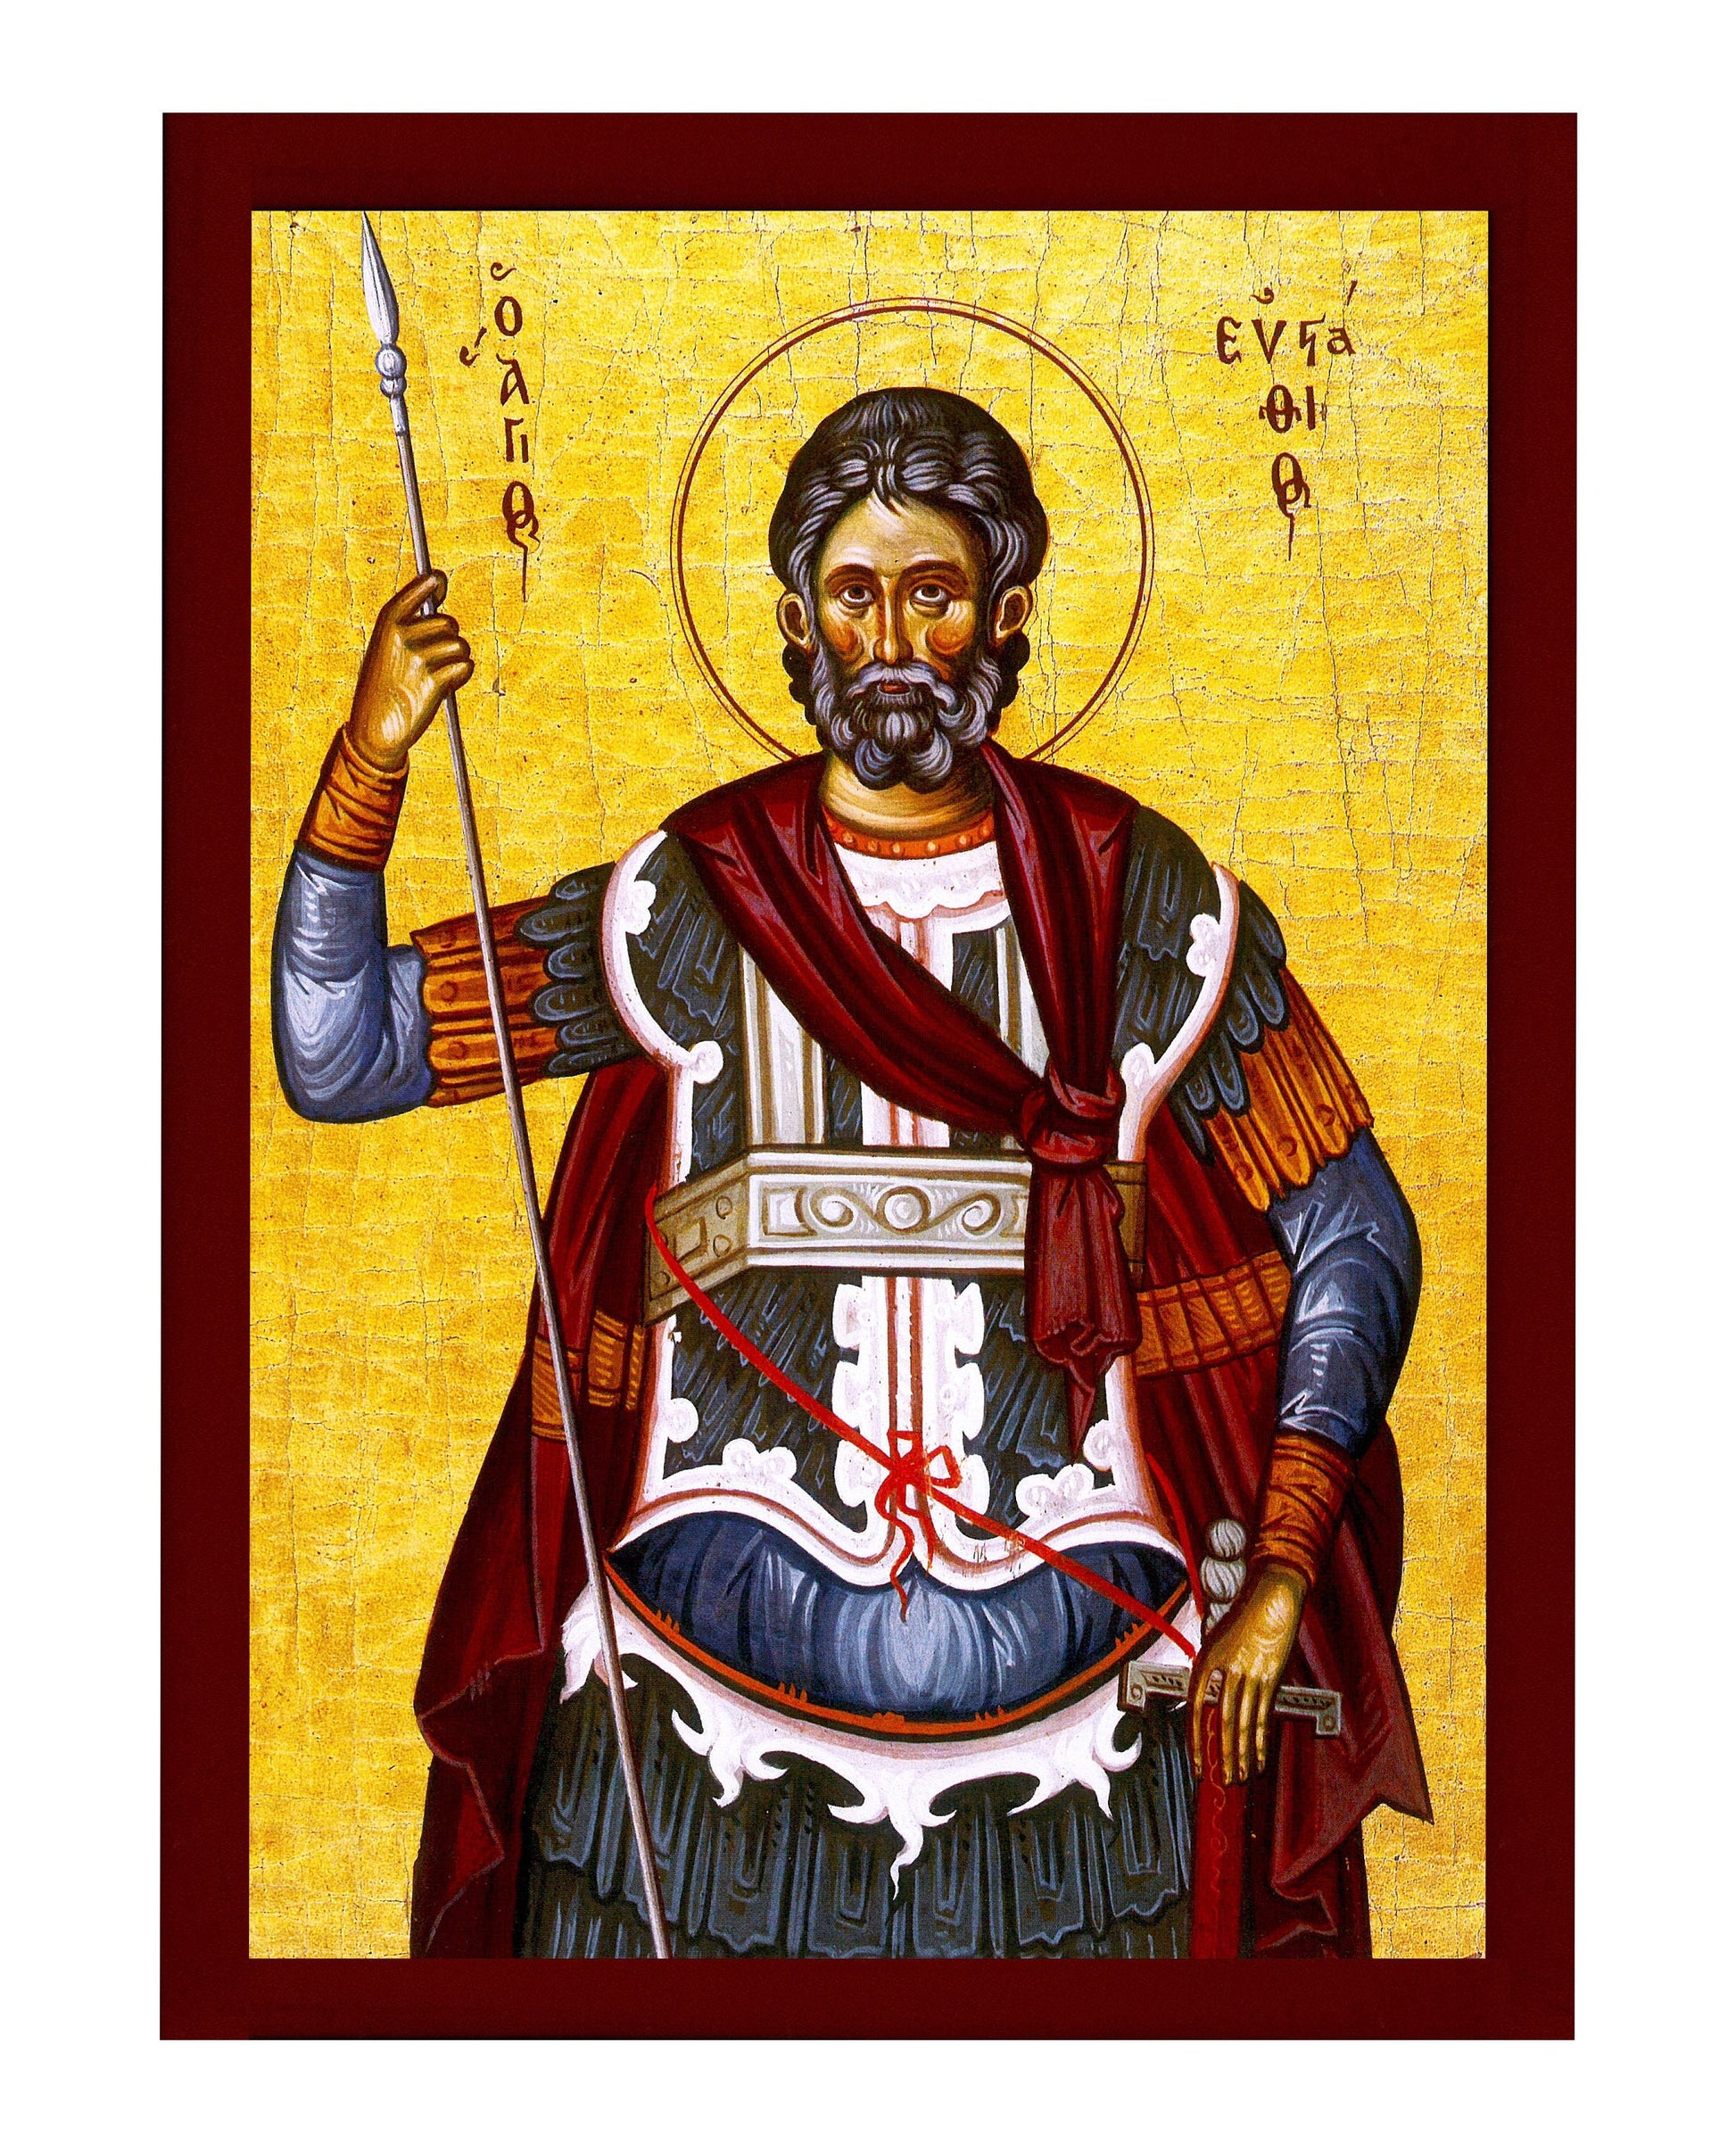 Saint Eustathius icon, Handmade Greek Orthodox icon of St Eustace, Byzantine art wall hanging icon wood plaque, religious decor TheHolyArt